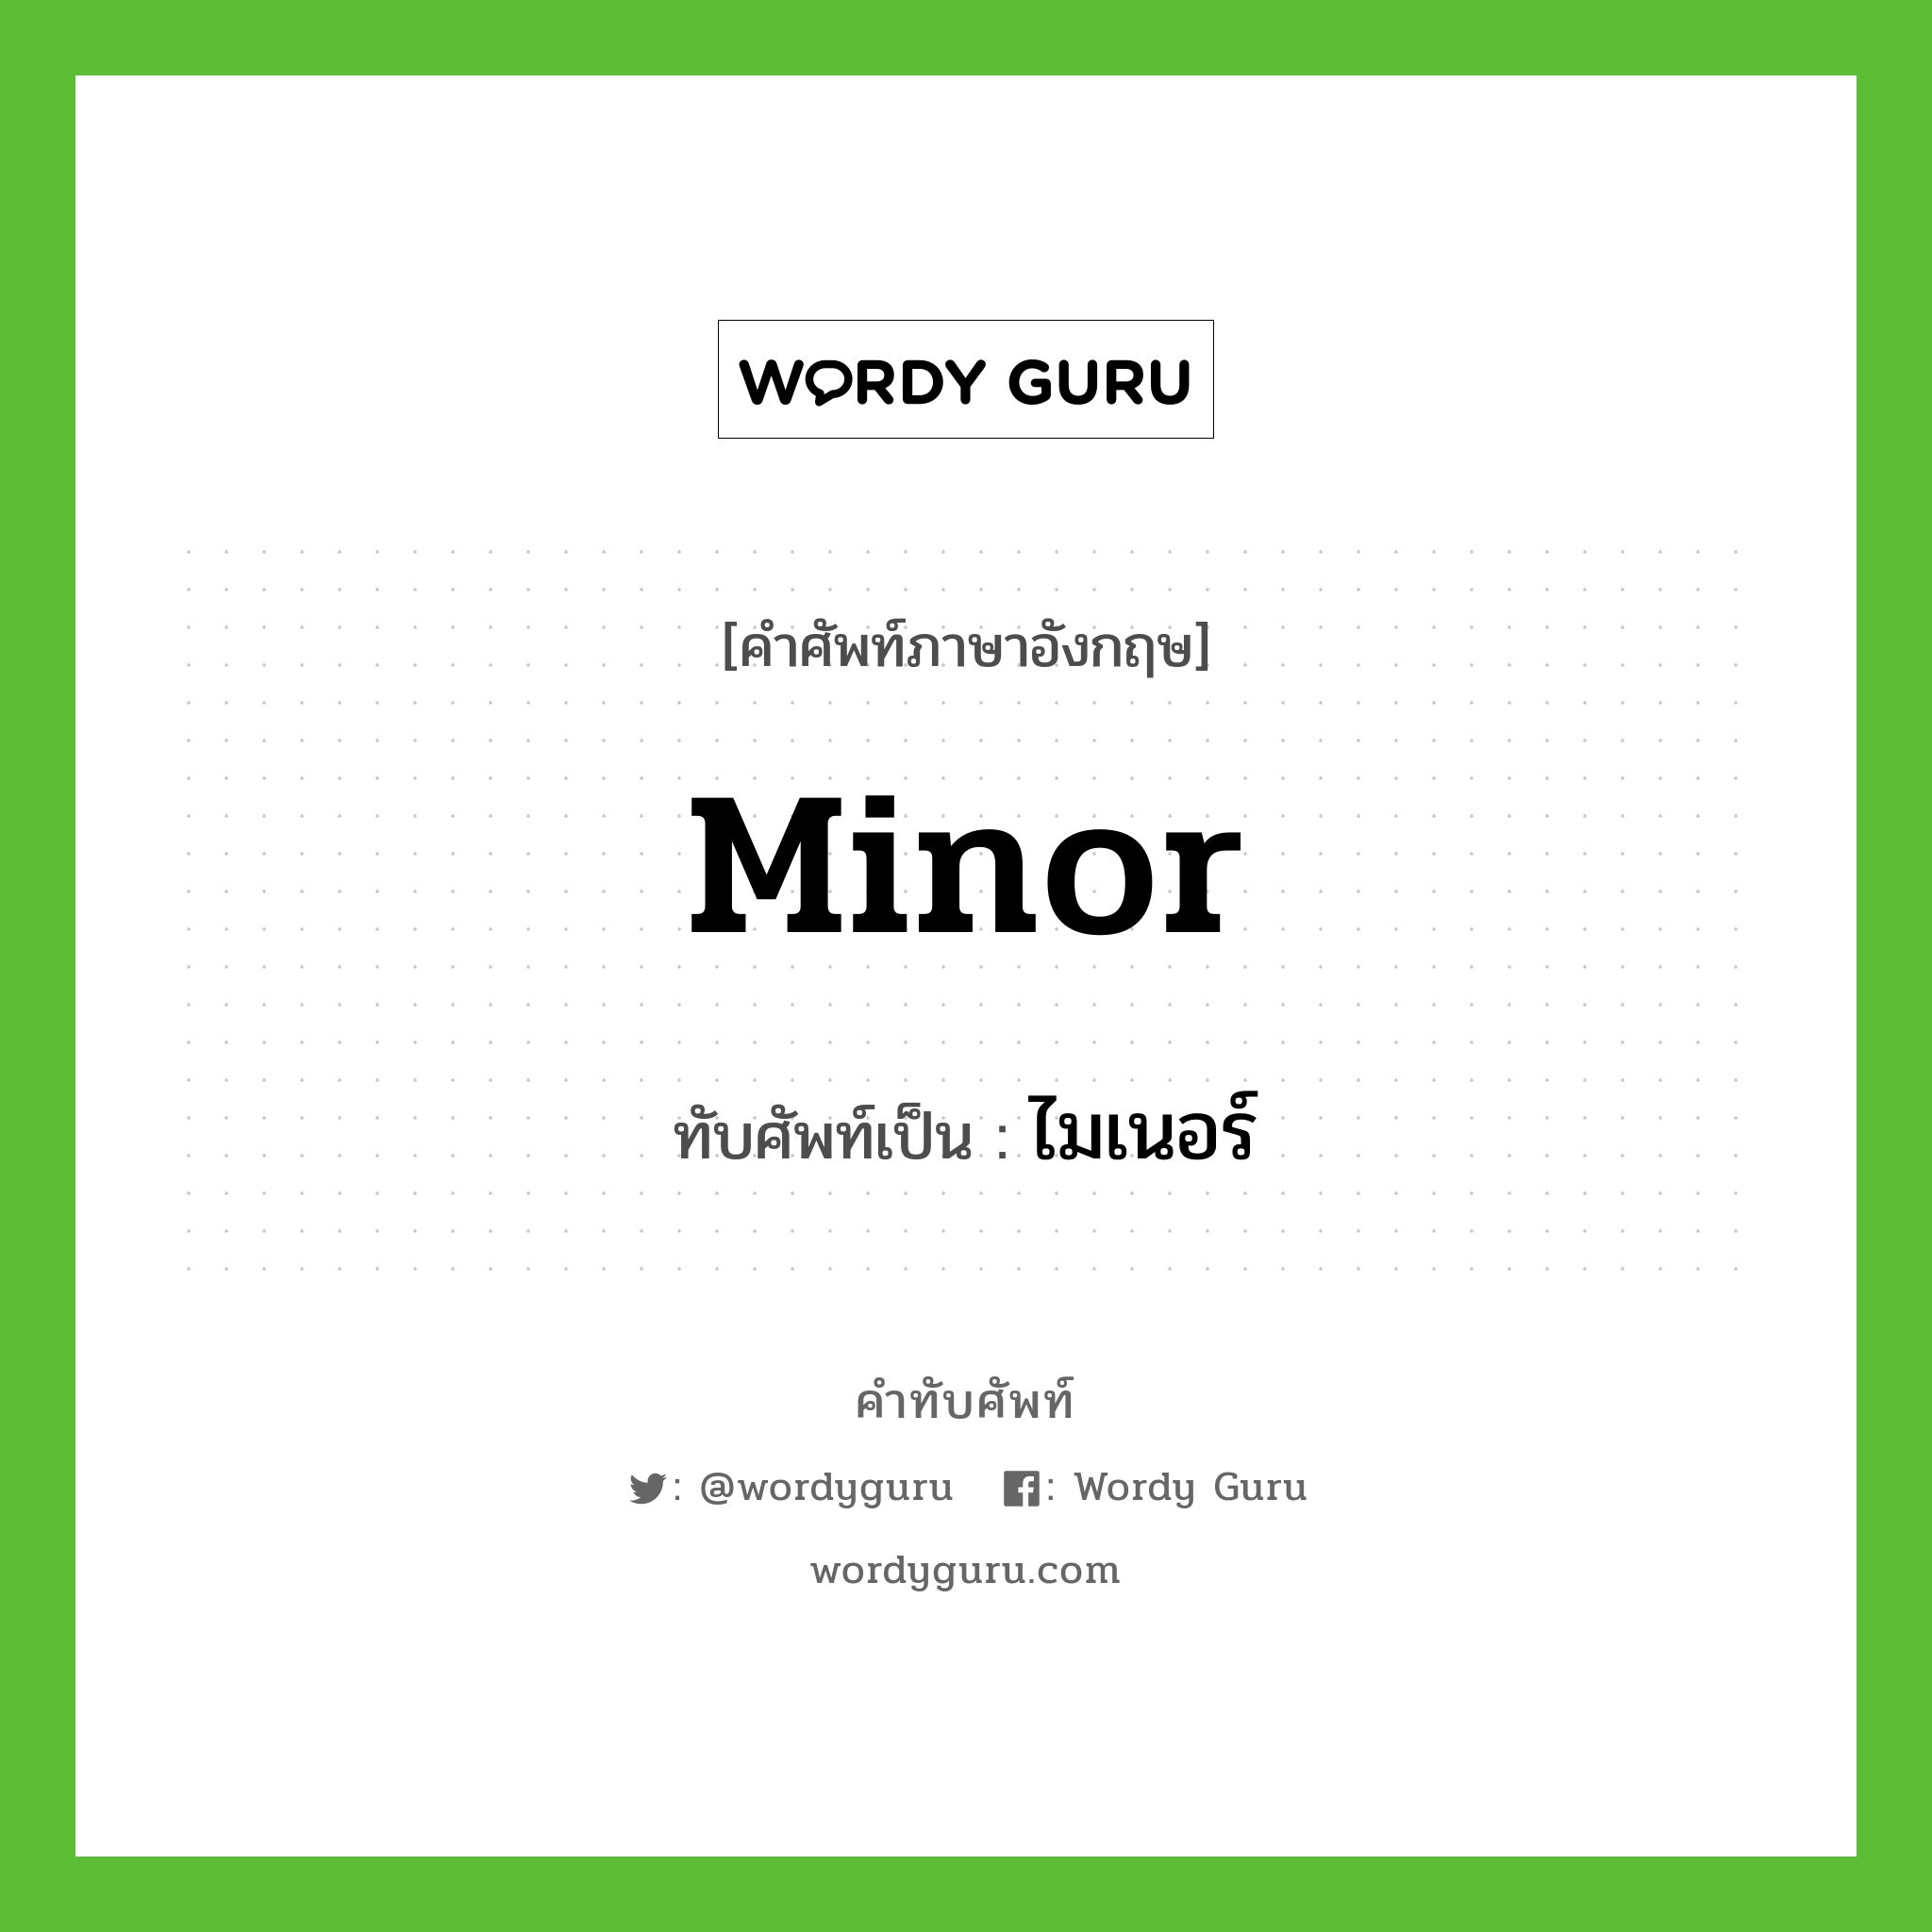 minor เขียนเป็นคำไทยว่าอะไร?, คำศัพท์ภาษาอังกฤษ minor ทับศัพท์เป็น ไมเนอร์